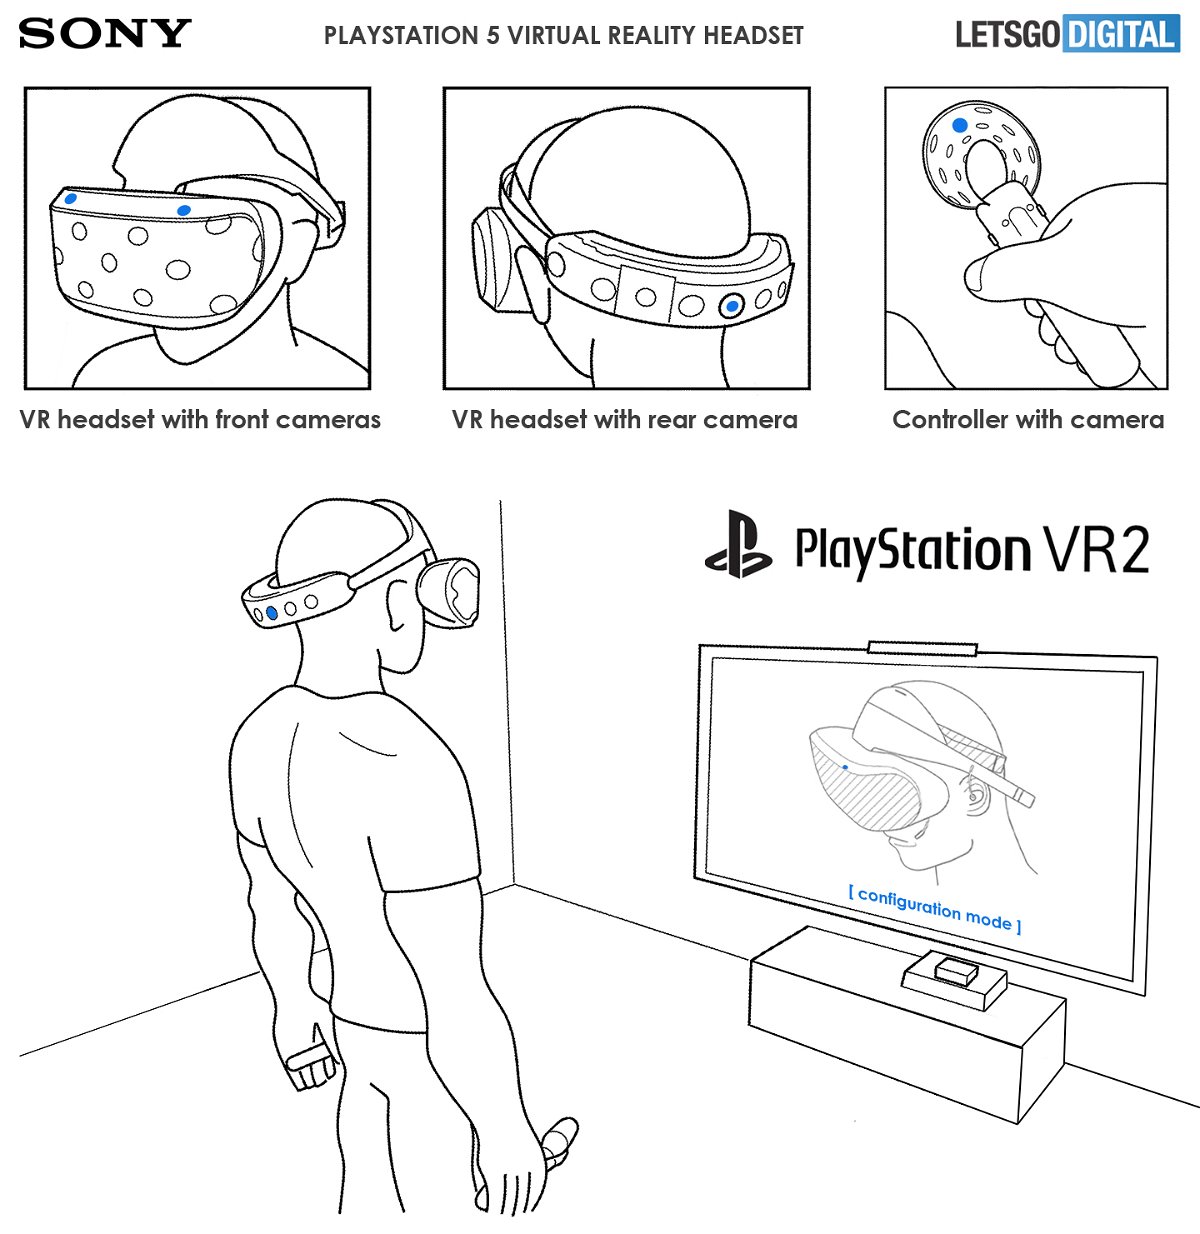 Le immagini di PS VR 2 secondo il brevetto di Sony